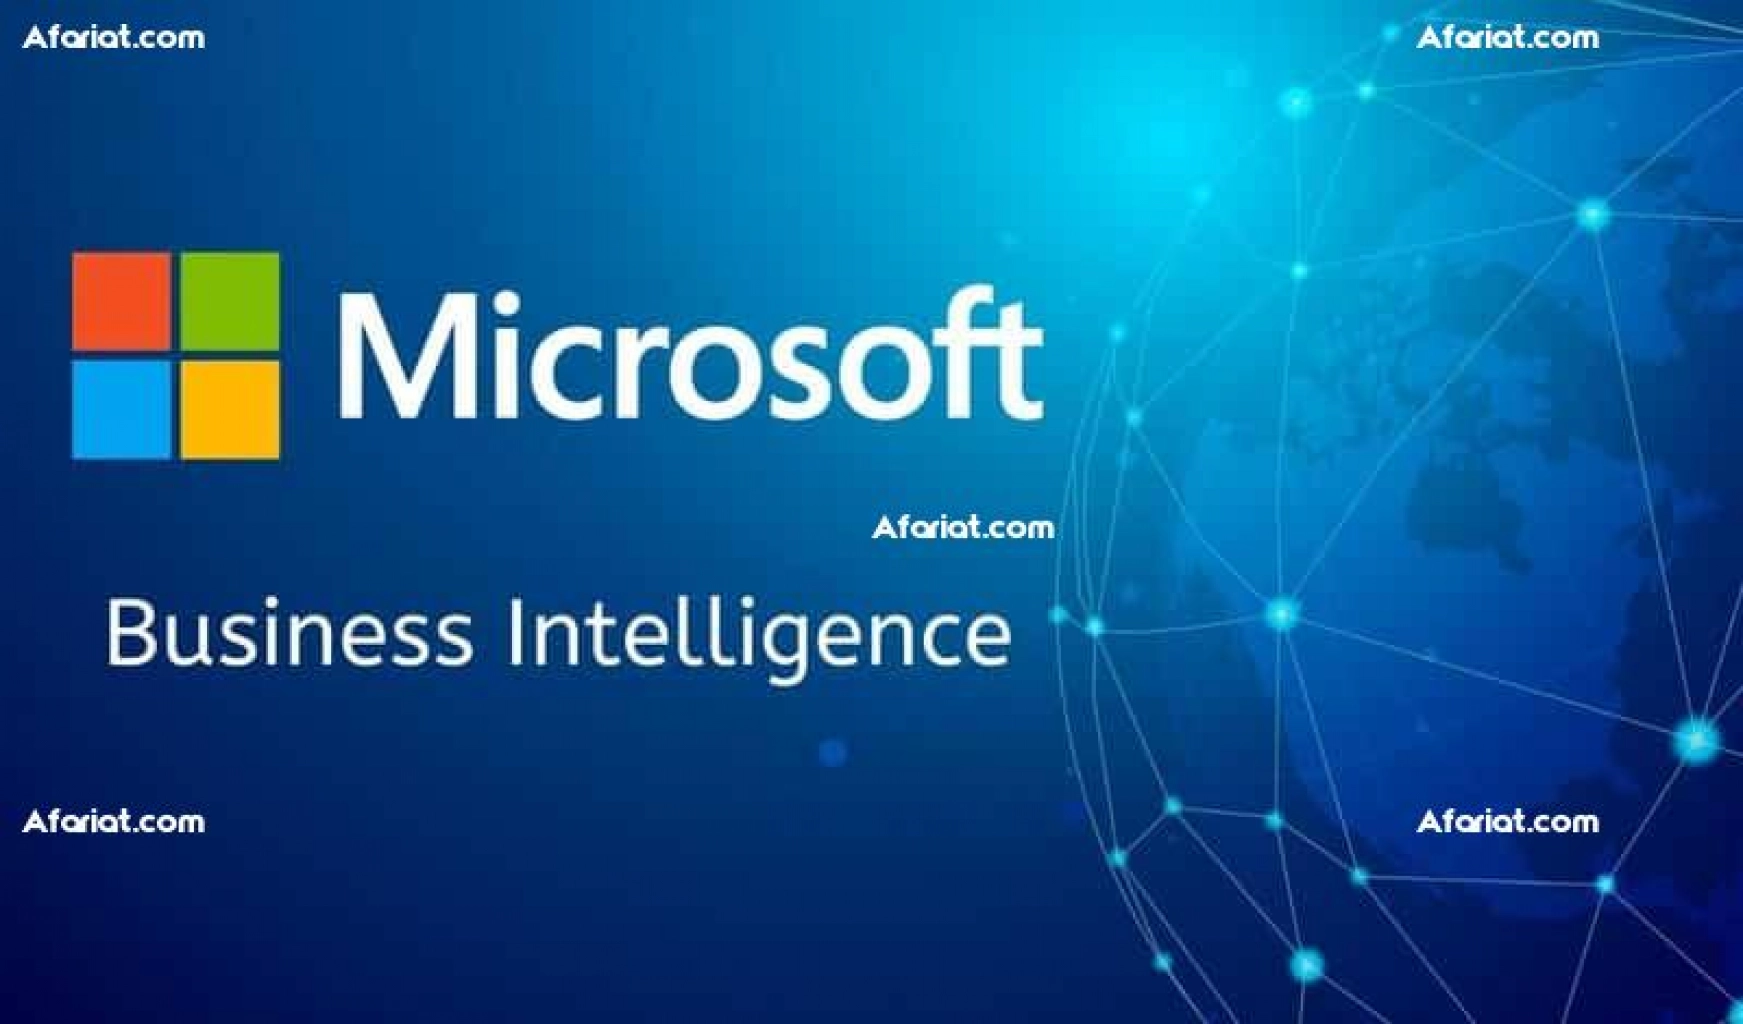 Formation en Microsoft Business Intelligence MSBI